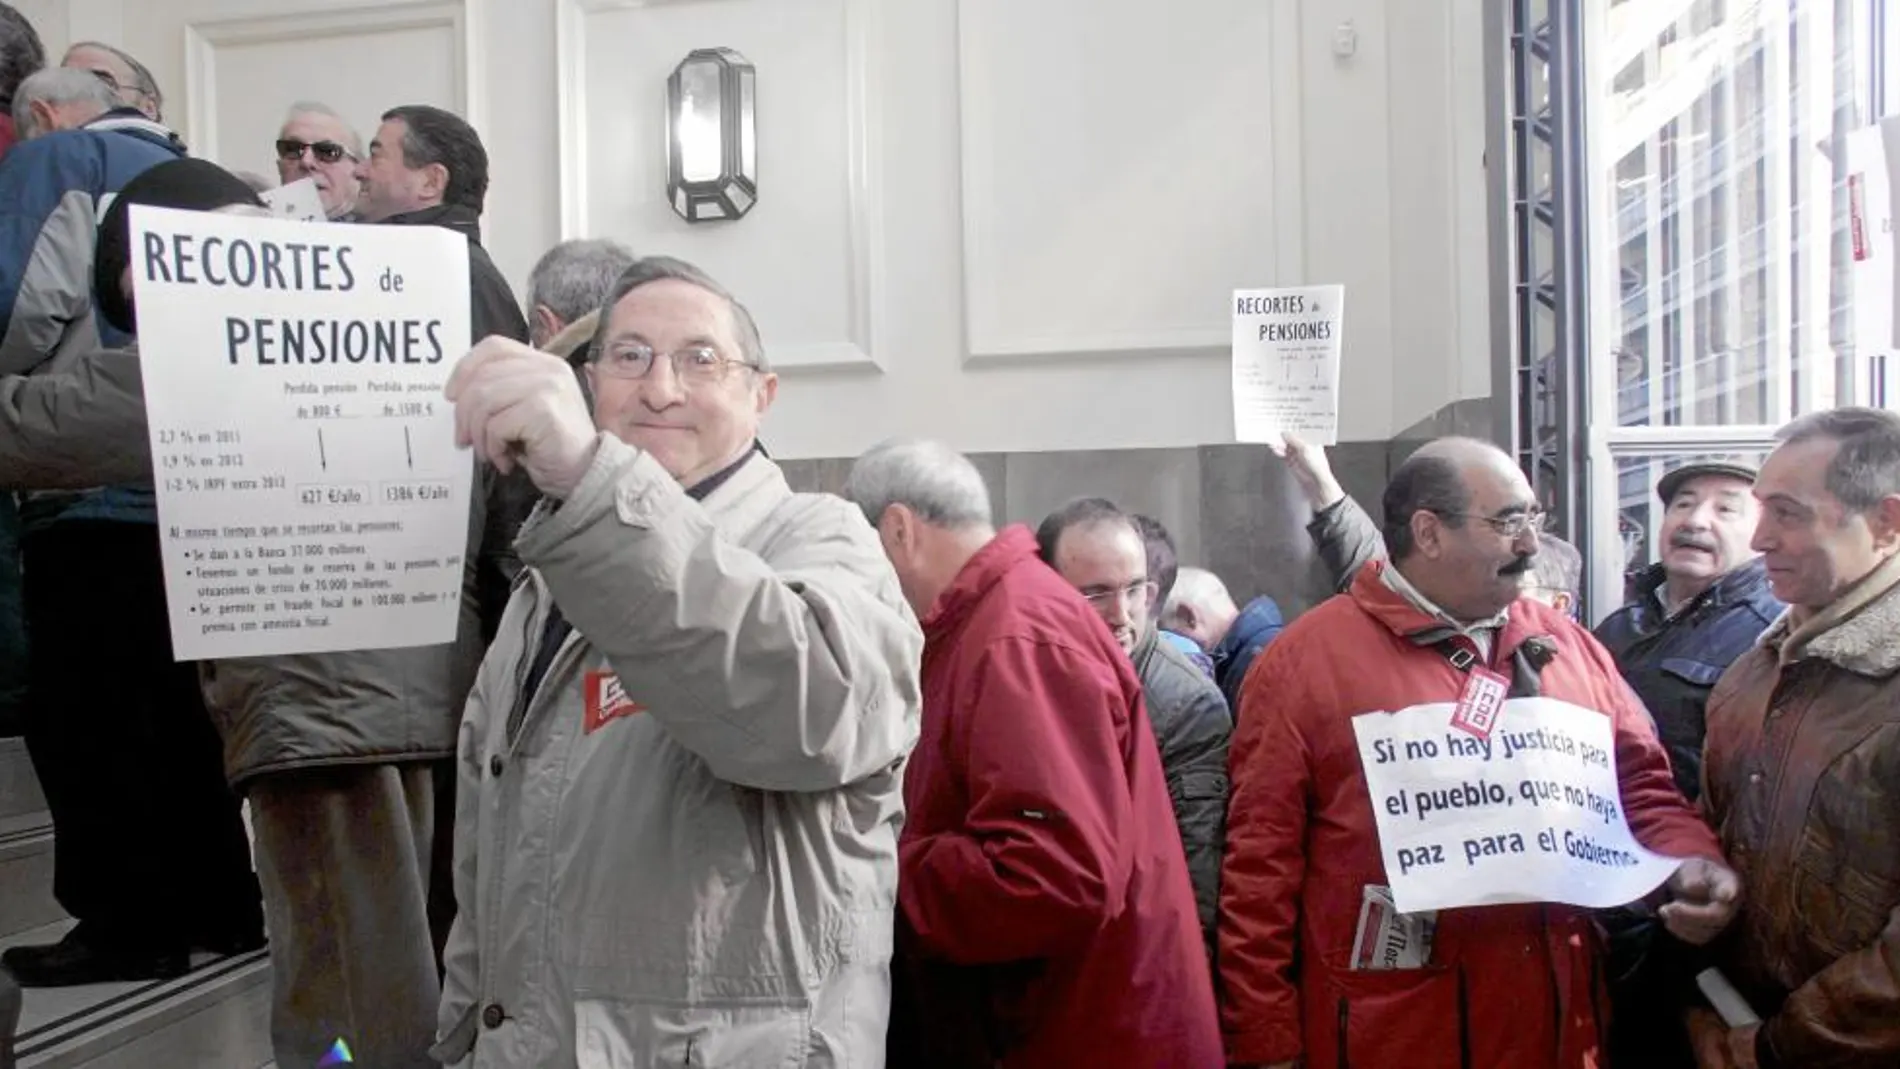 Jubilados, en una reciente concentración frente a la sede del INSS de Valladolid para protestar por la situación de sus pensiones, y realizan una entrega masiva de reclamaciones ante la Seguridad Social